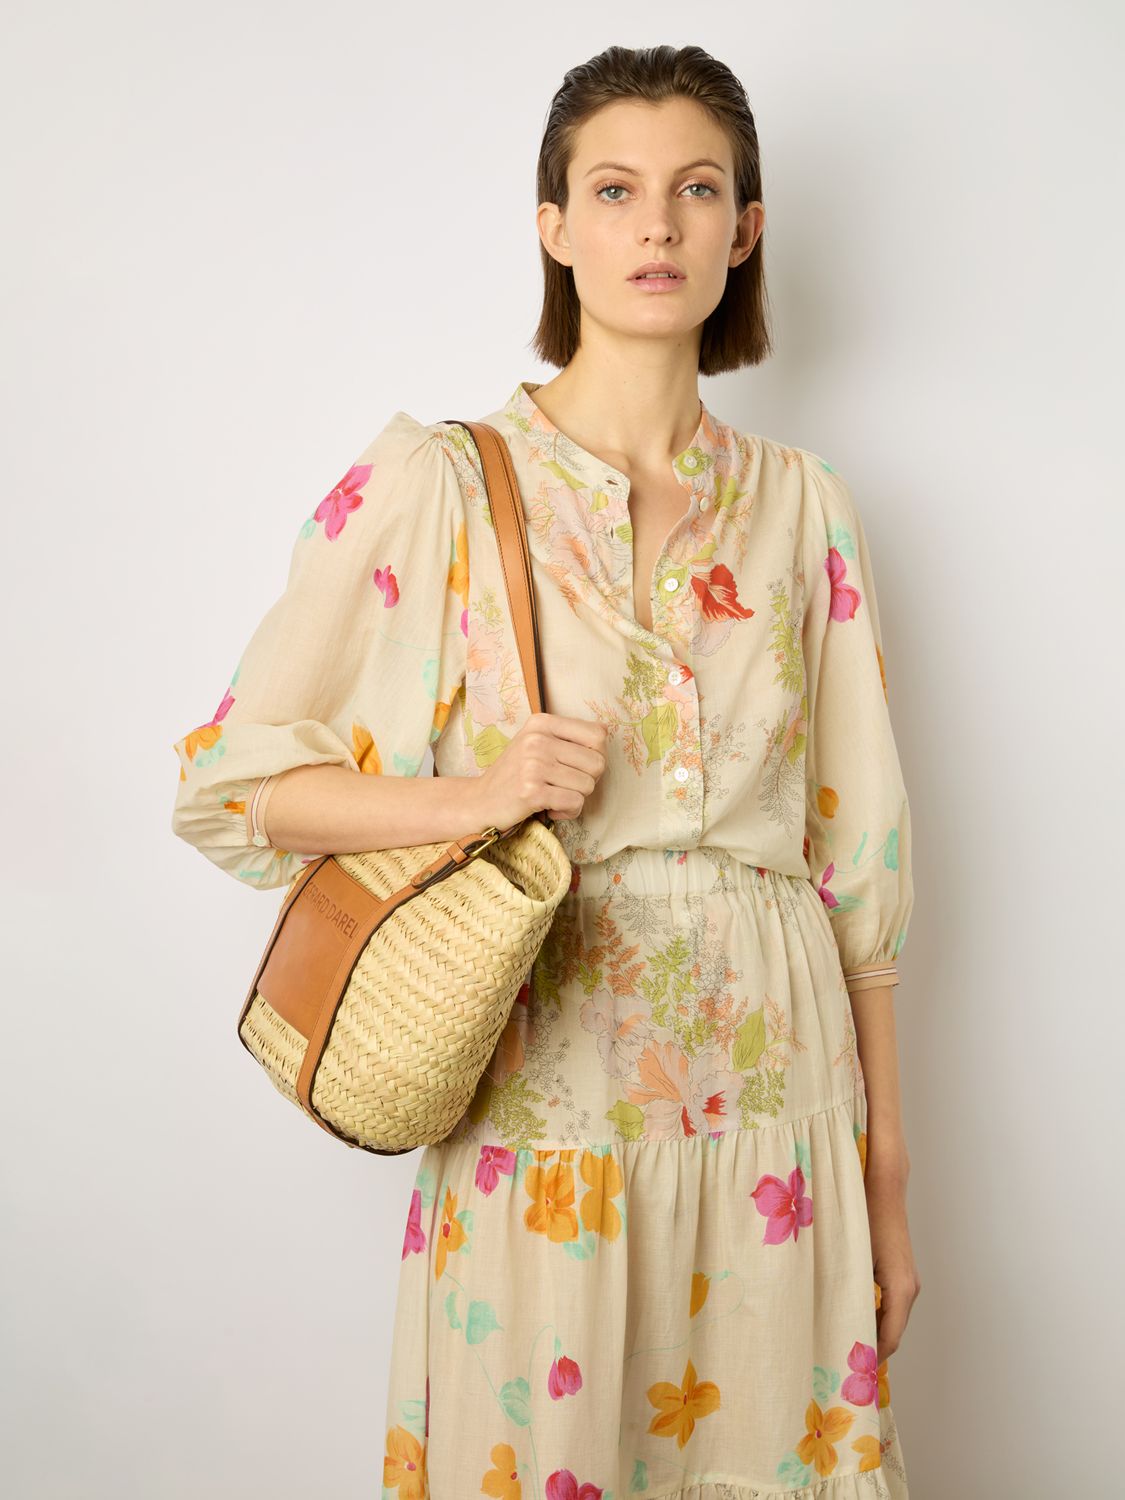 Buy Gerard Darel Brooke Floral Midi Skirt, Multi Online at johnlewis.com